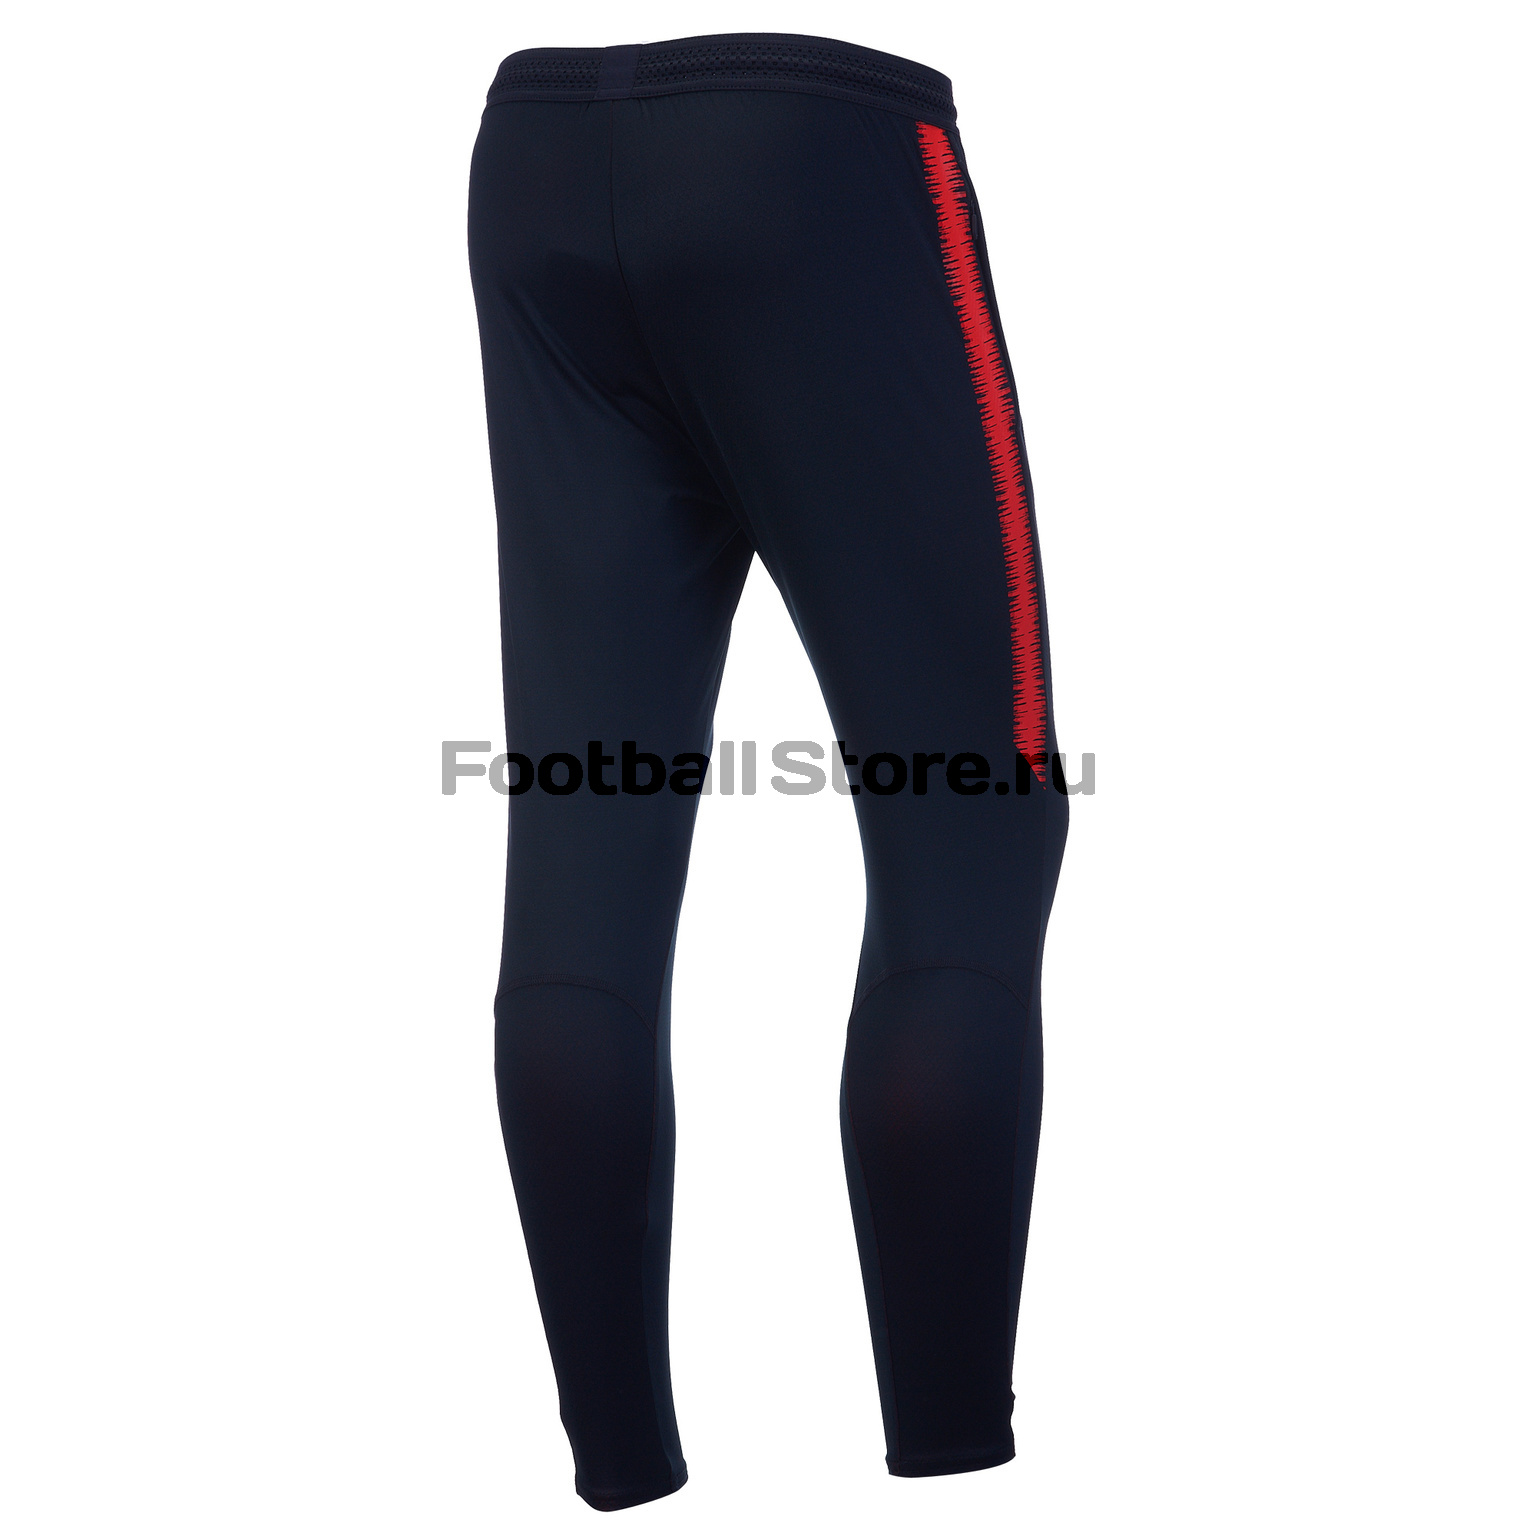 Брюки тренировочные Nike Strike Flex Football Pants 902586-022 